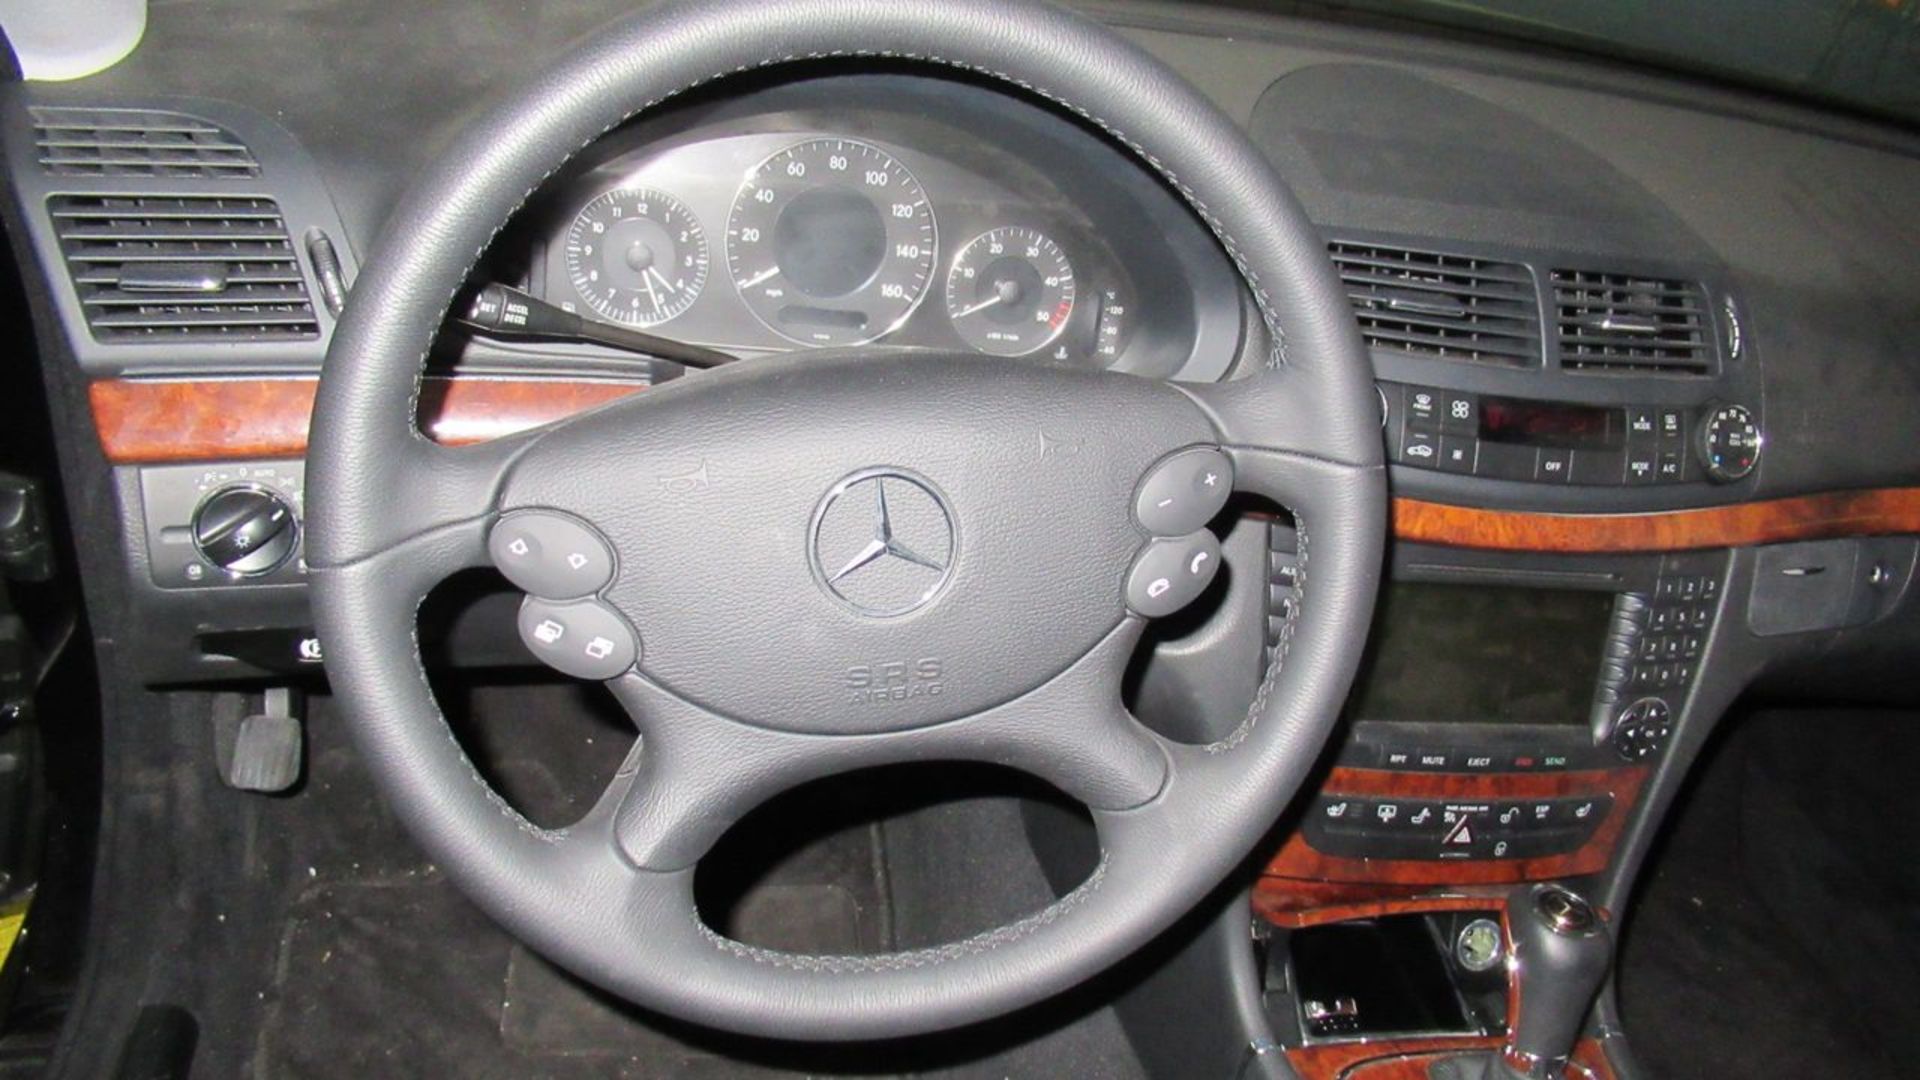 2007 - Mercedes-Benz E320CDI 4-Door Sport Sedan, VIN #: WDBUF22X77B056102; w/ BlueTec 3.0L V6 Diesel - Image 6 of 10